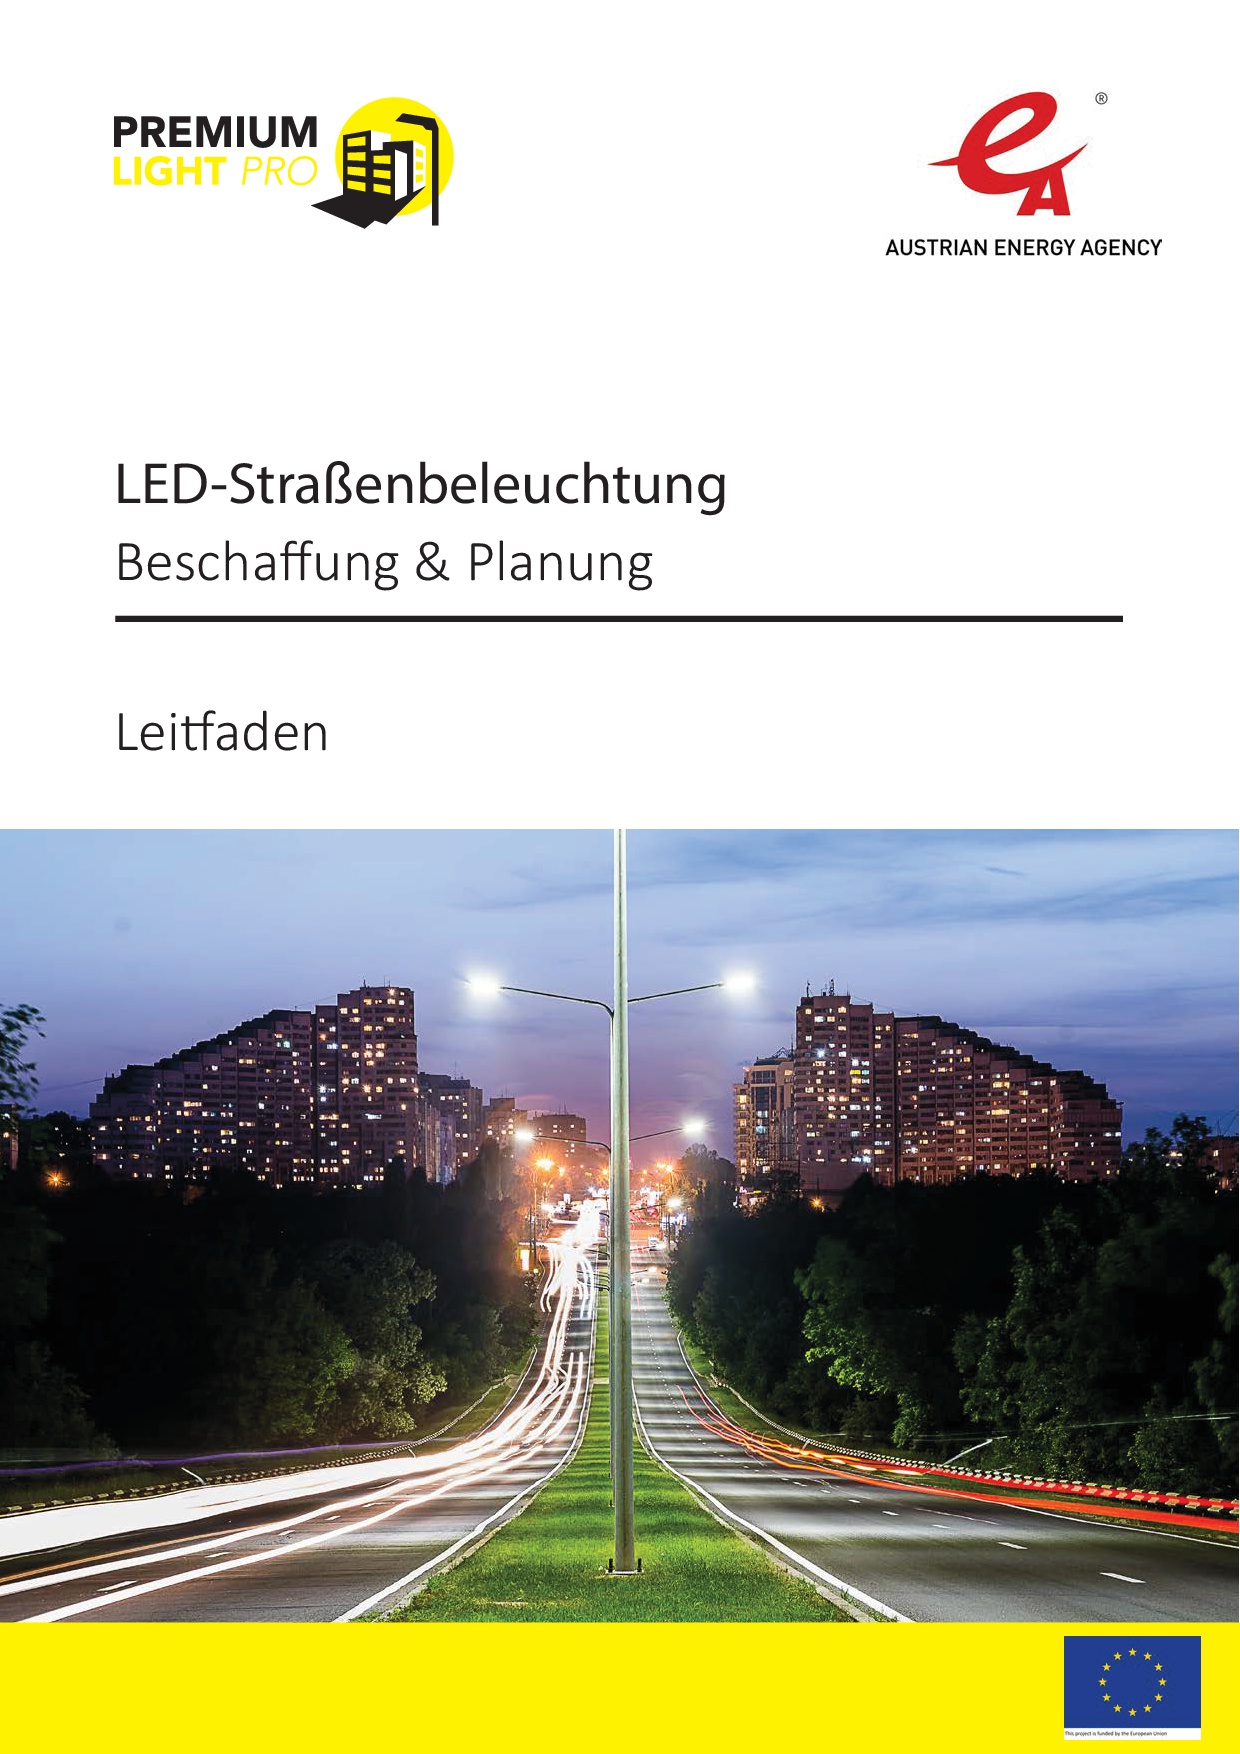 Neue Lichtsysteme bei VW - 30.000 Leuchtpunkte sollen die Straße